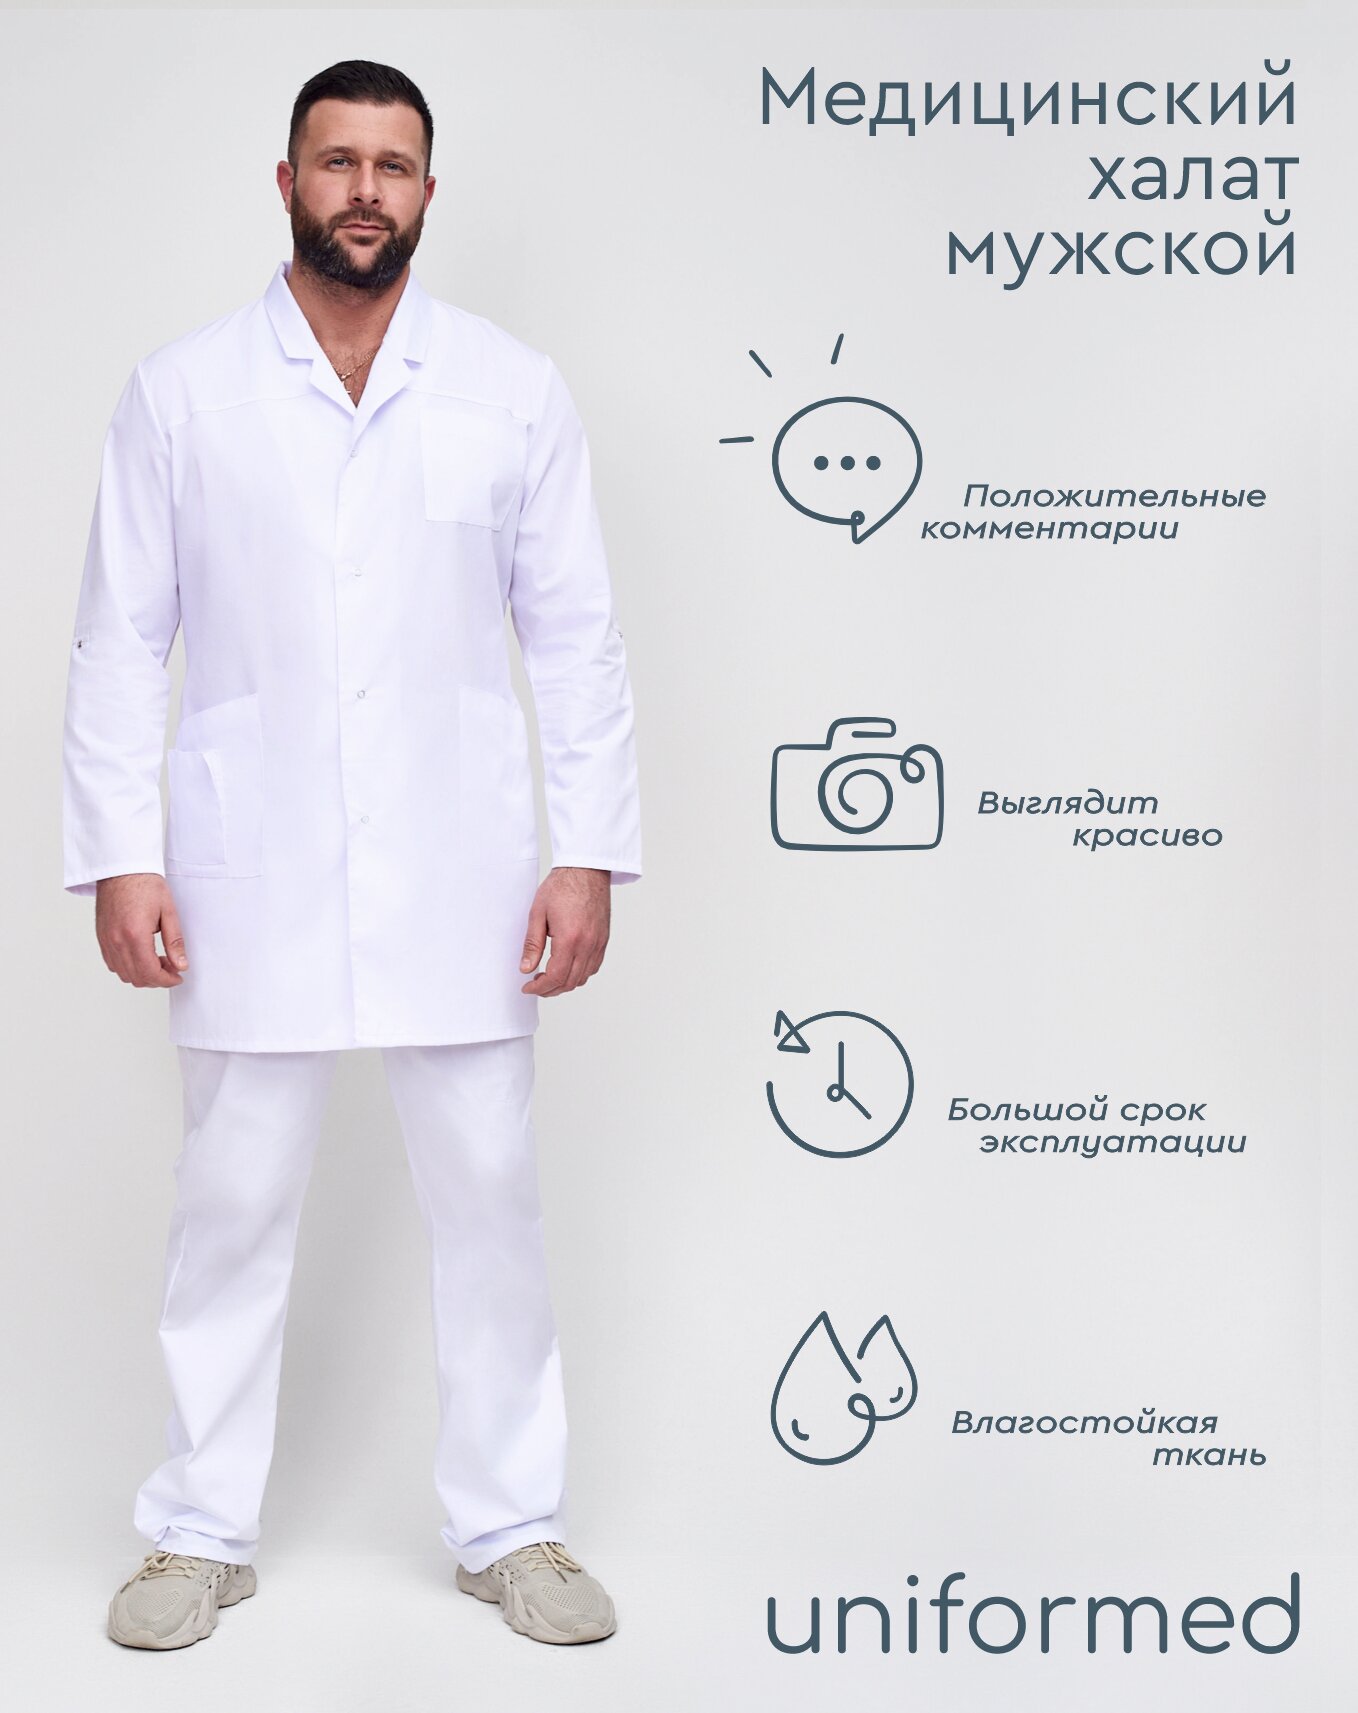 Медицинский мужской халат 129.1.1 Uniformed, ткань тиси, укороченный, рукав длинный, на кнопках, цвет белый, размер 46